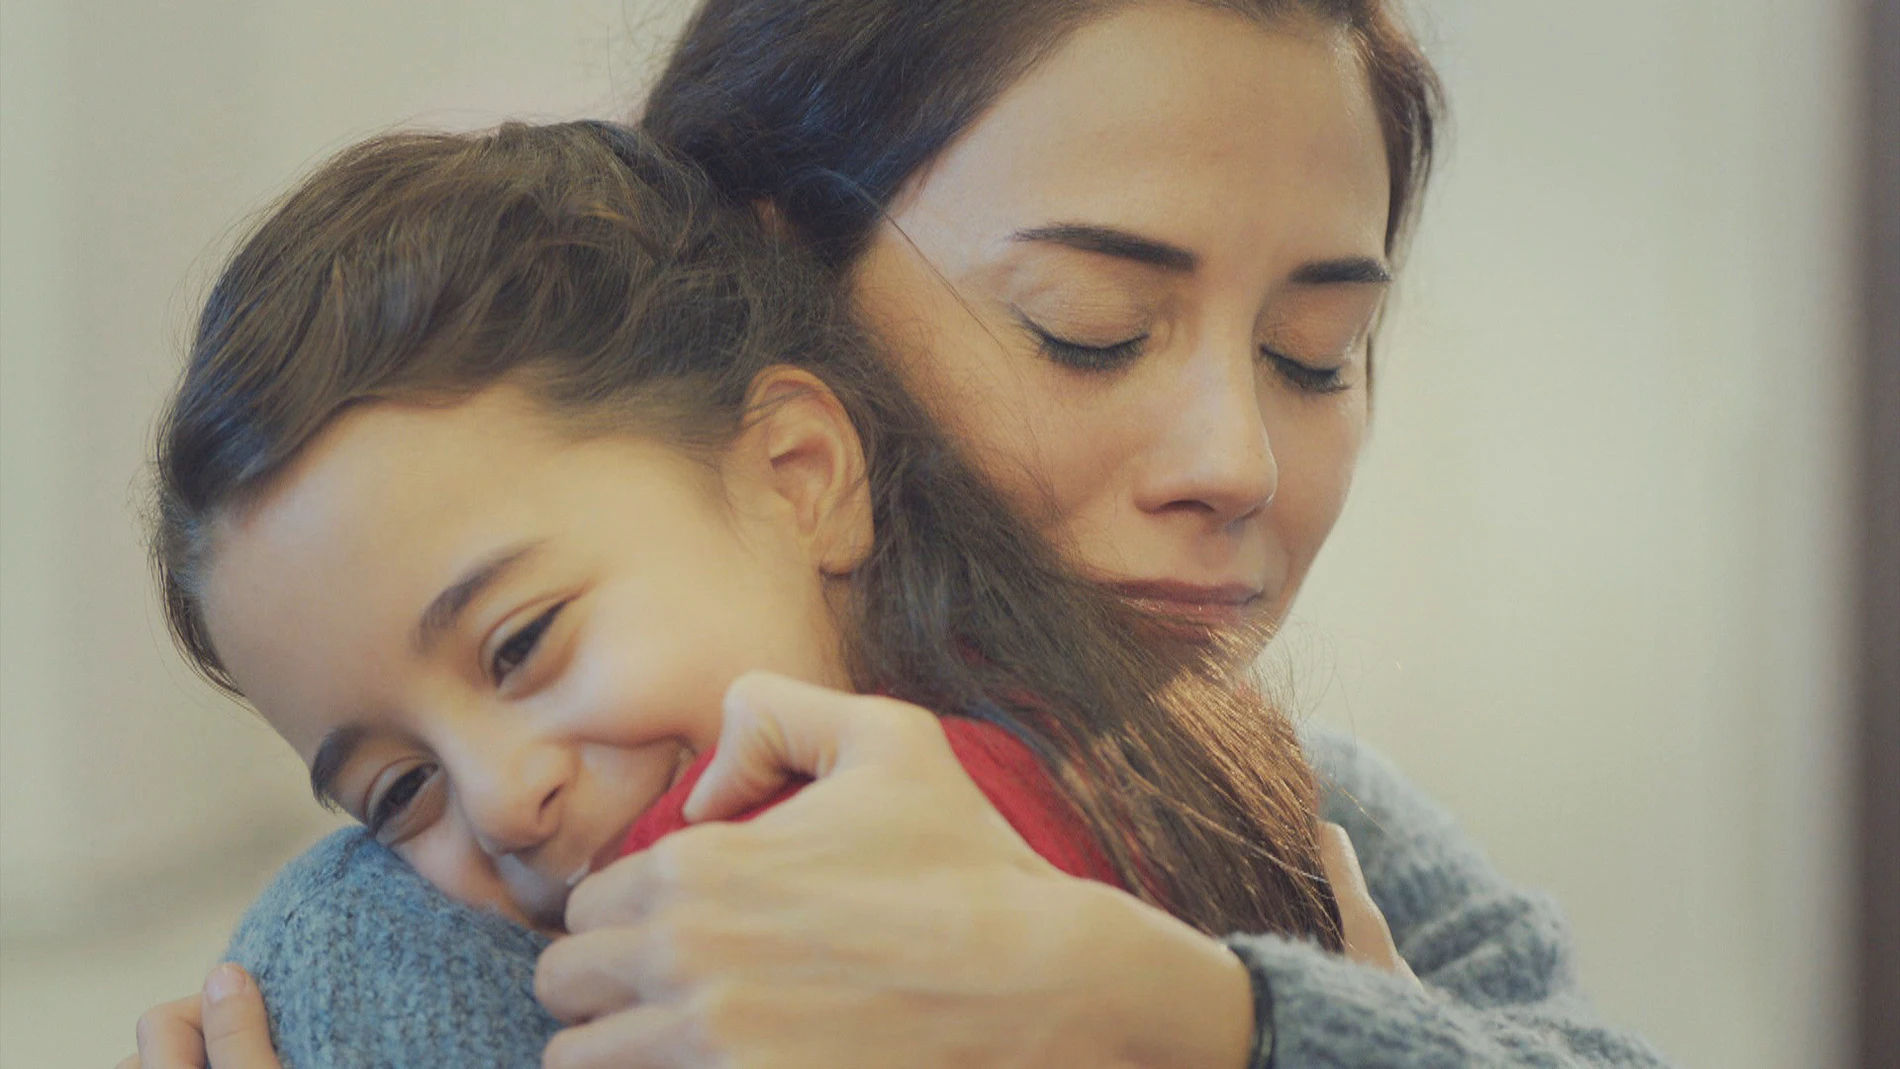 Turna a Zeynep: "Me hace muy feliz que seas mi madre"